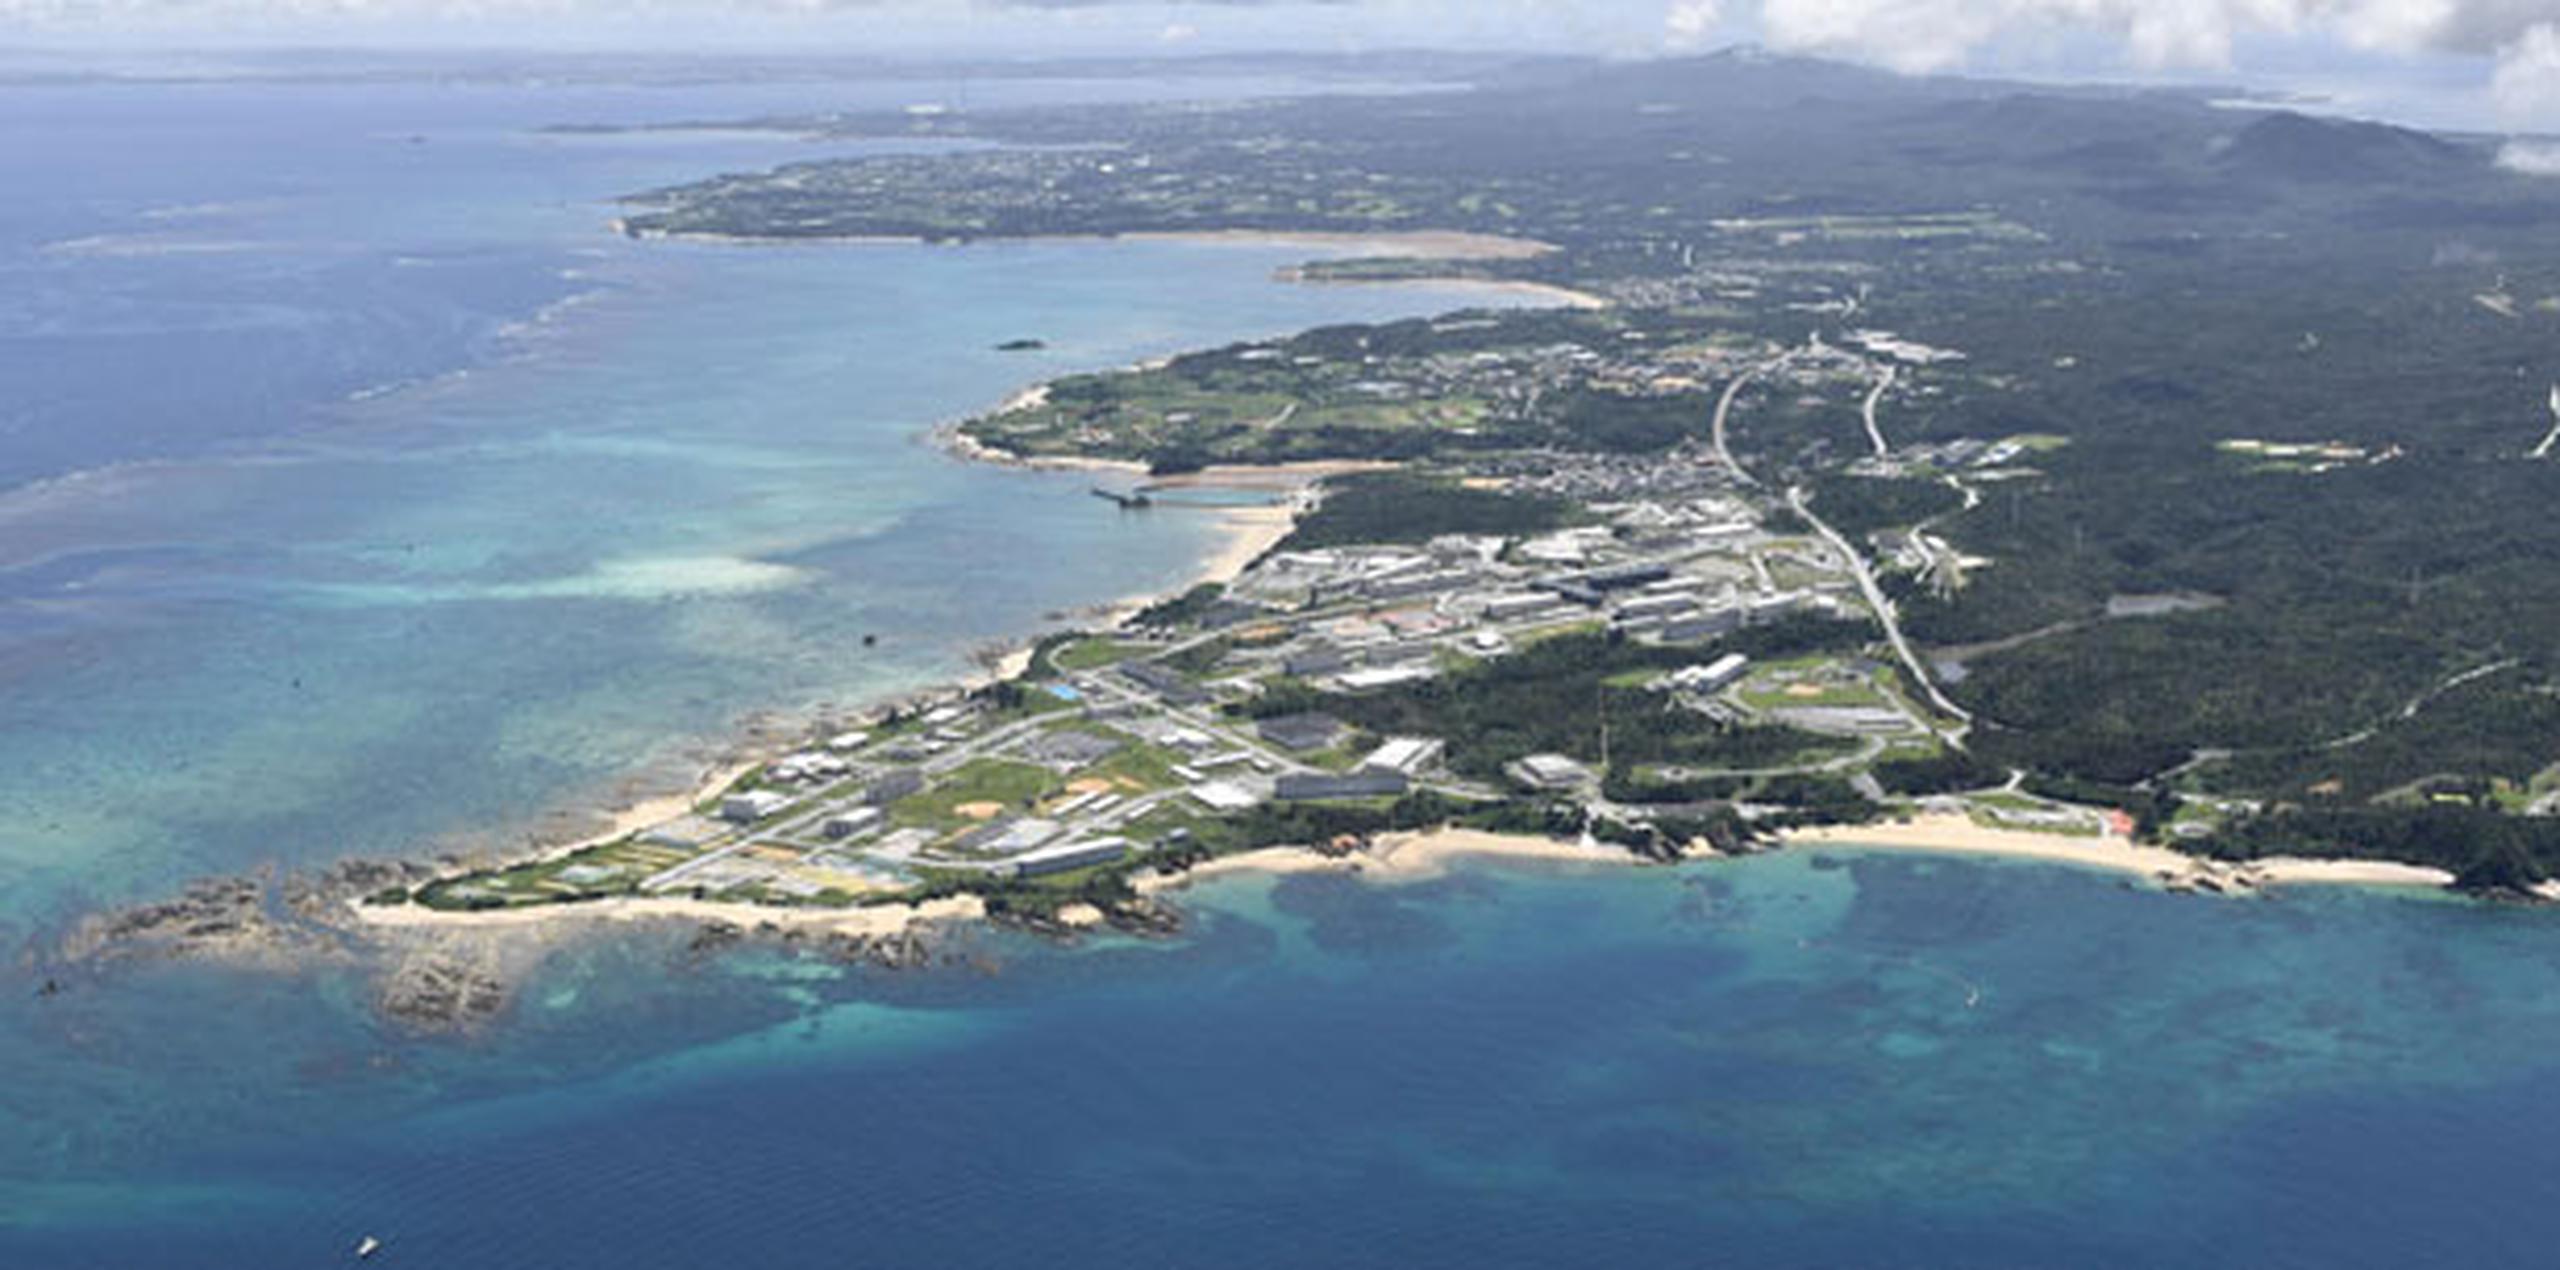 Los aparatos chinos atravesaron en la víspera el estrecho de Miyako, situado entre la isla homónima y la de Okinawa, en el Mar de China Oriental. (Archivo)